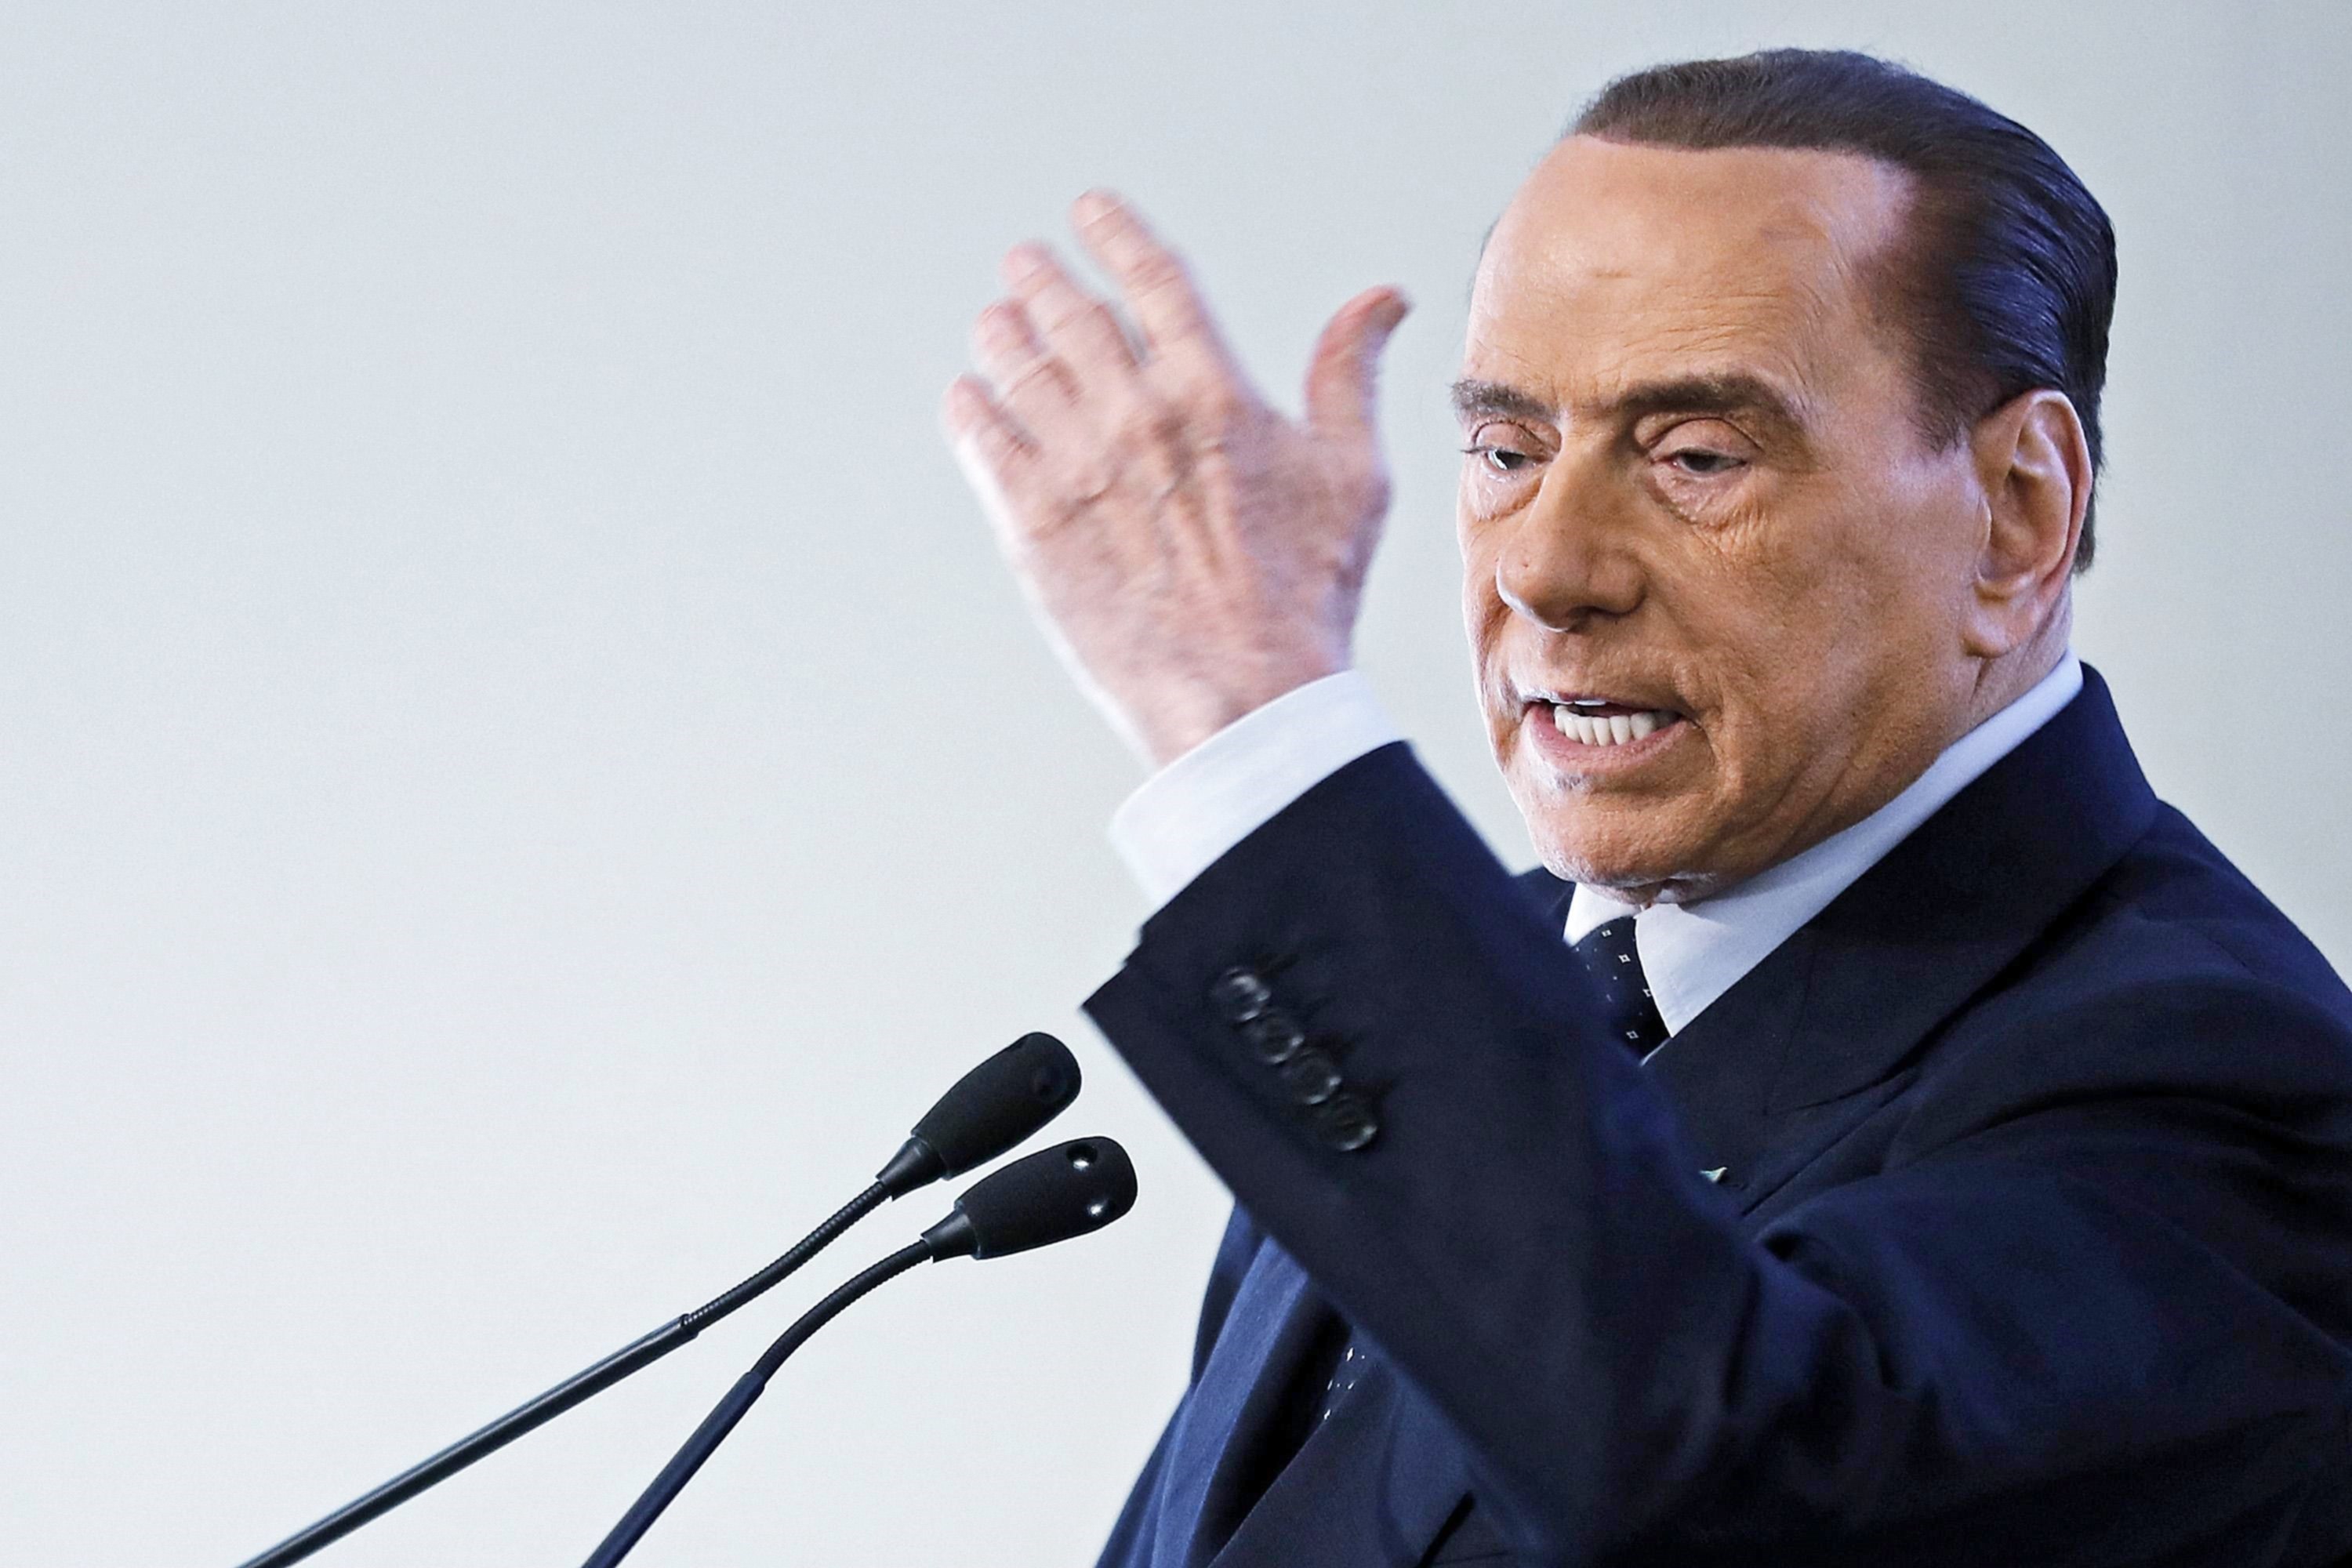 Berlusconi quiere que Italia contrate a tres millones de jóvenes desempleados